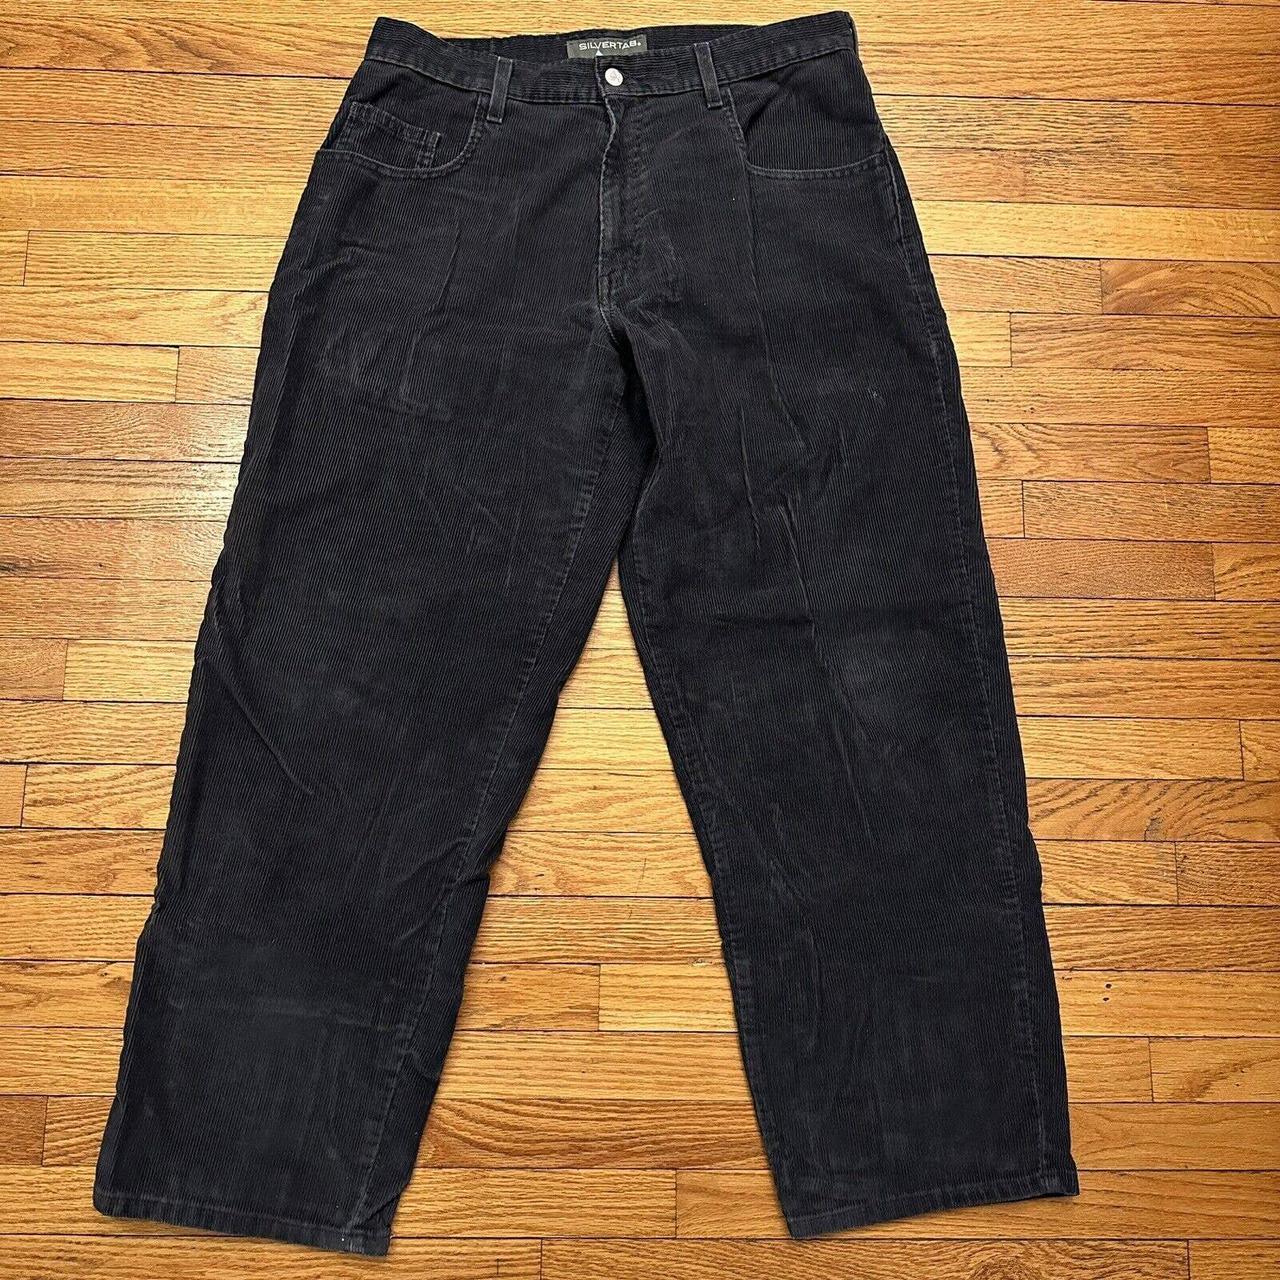 Vintage Levis SilverTab Corduroy Jeans Pants Size... - Depop